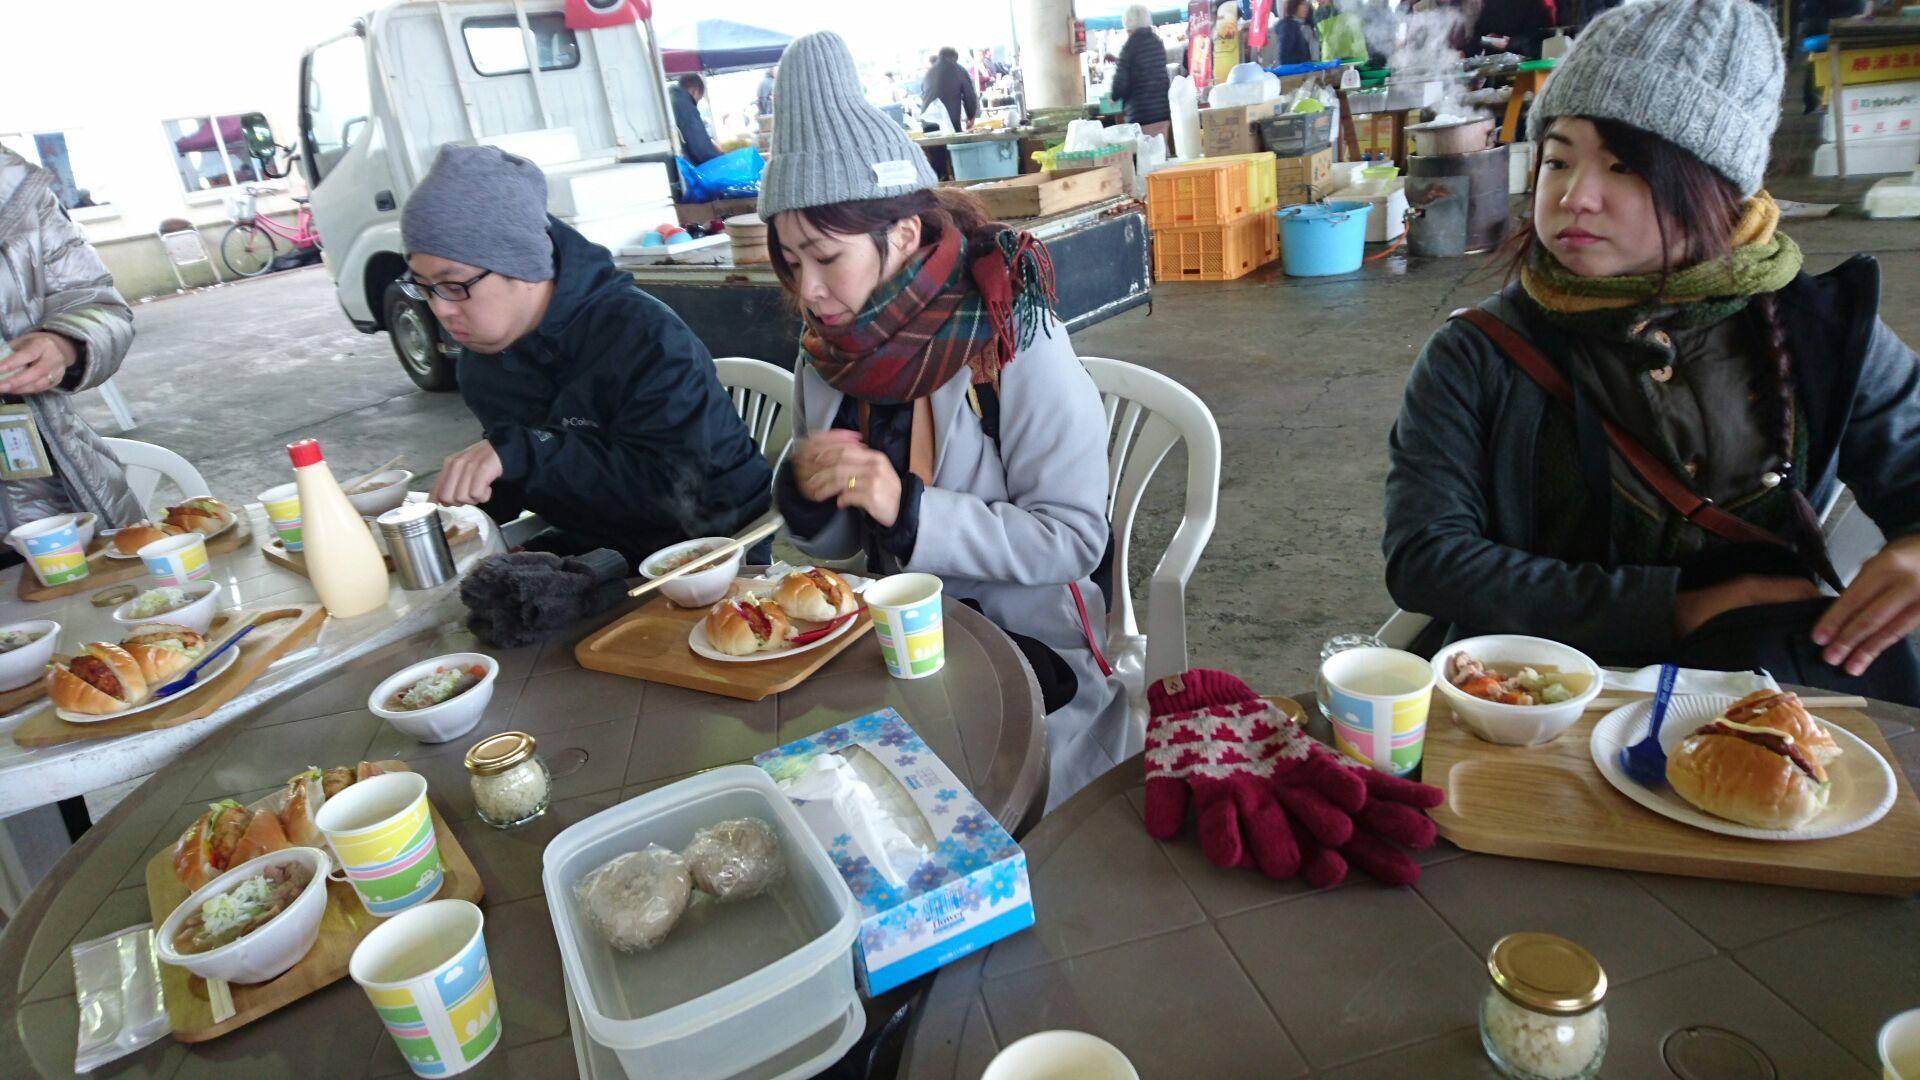 毛糸のニット帽と暖かそうなアウターを着込んだお客さん数名が、食事スペースのテーブルに並んでパンとスープの食事をとっている様子の写真